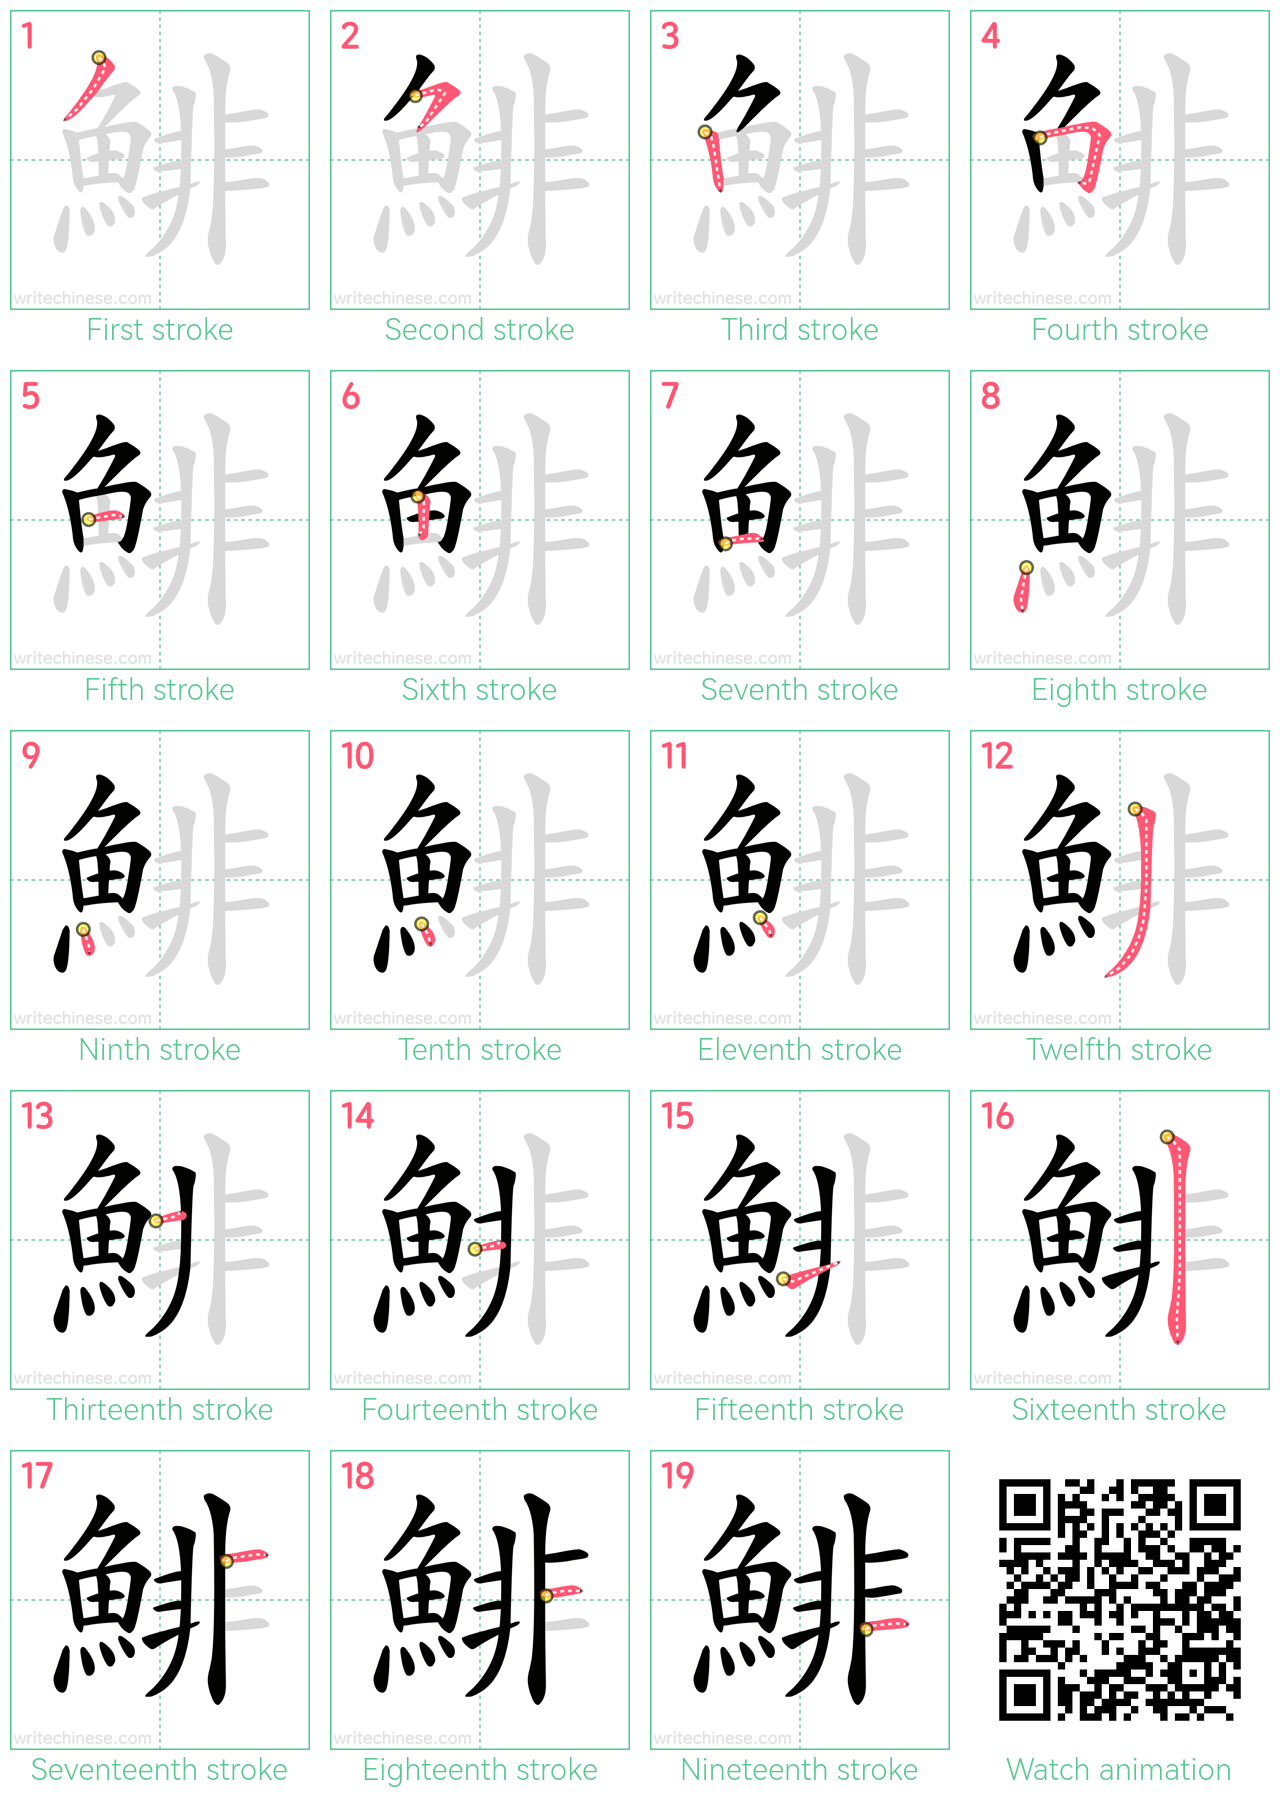 鯡 step-by-step stroke order diagrams